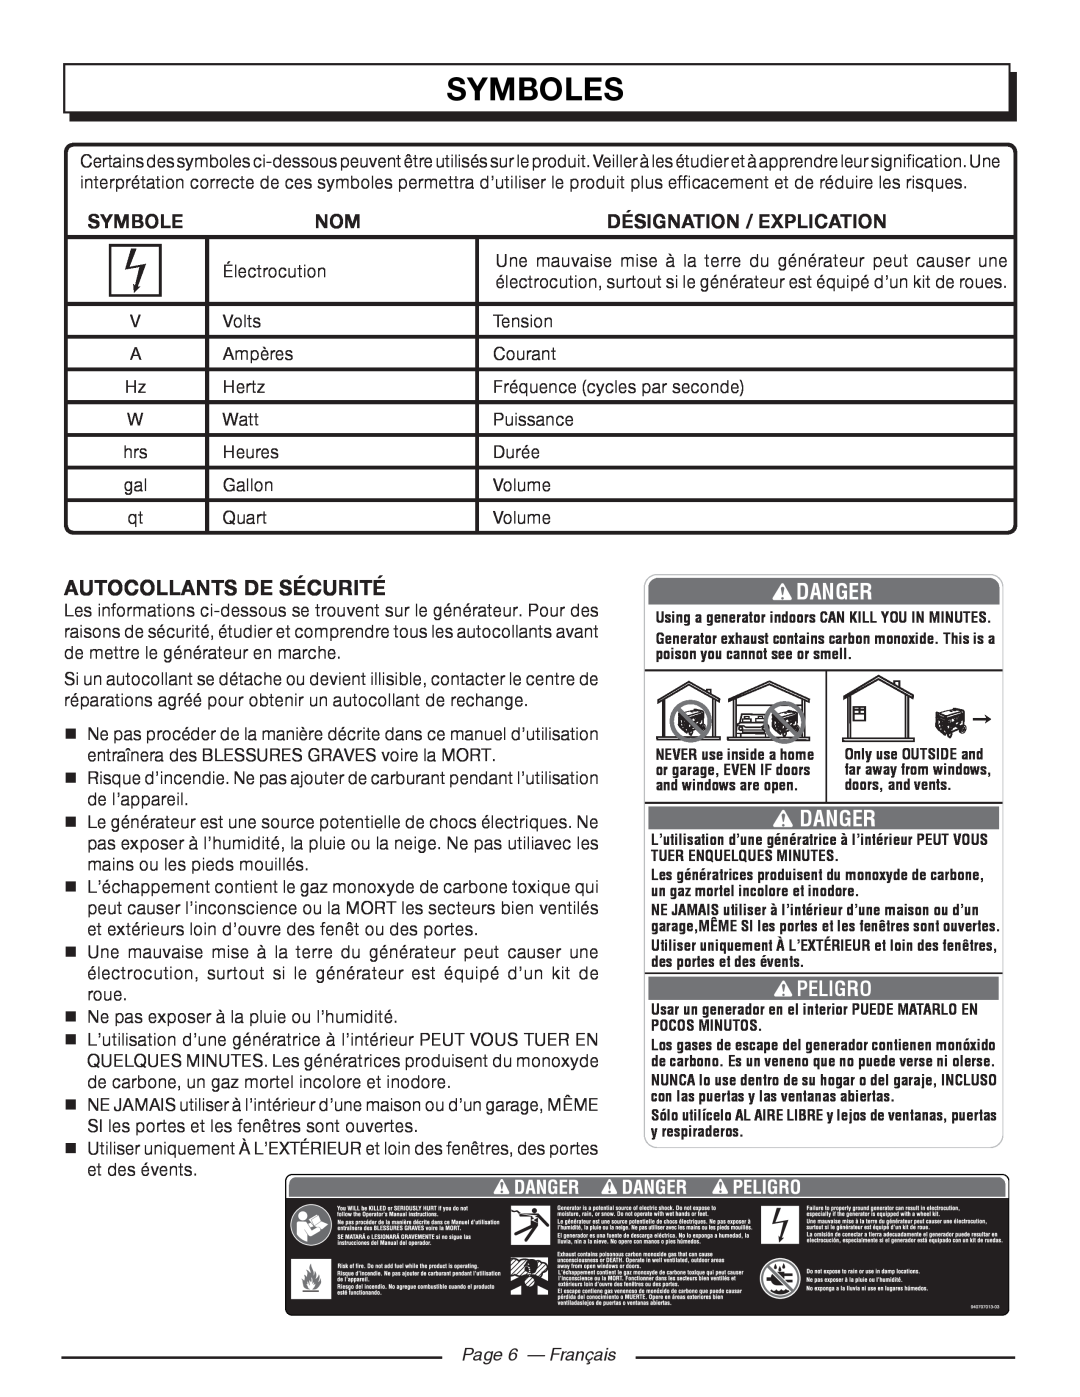 Homelite HGCA5000 Autocollants De Sécurité, Page 6 - Français, Symboles, Danger, Désignation / Explication, Peligro 